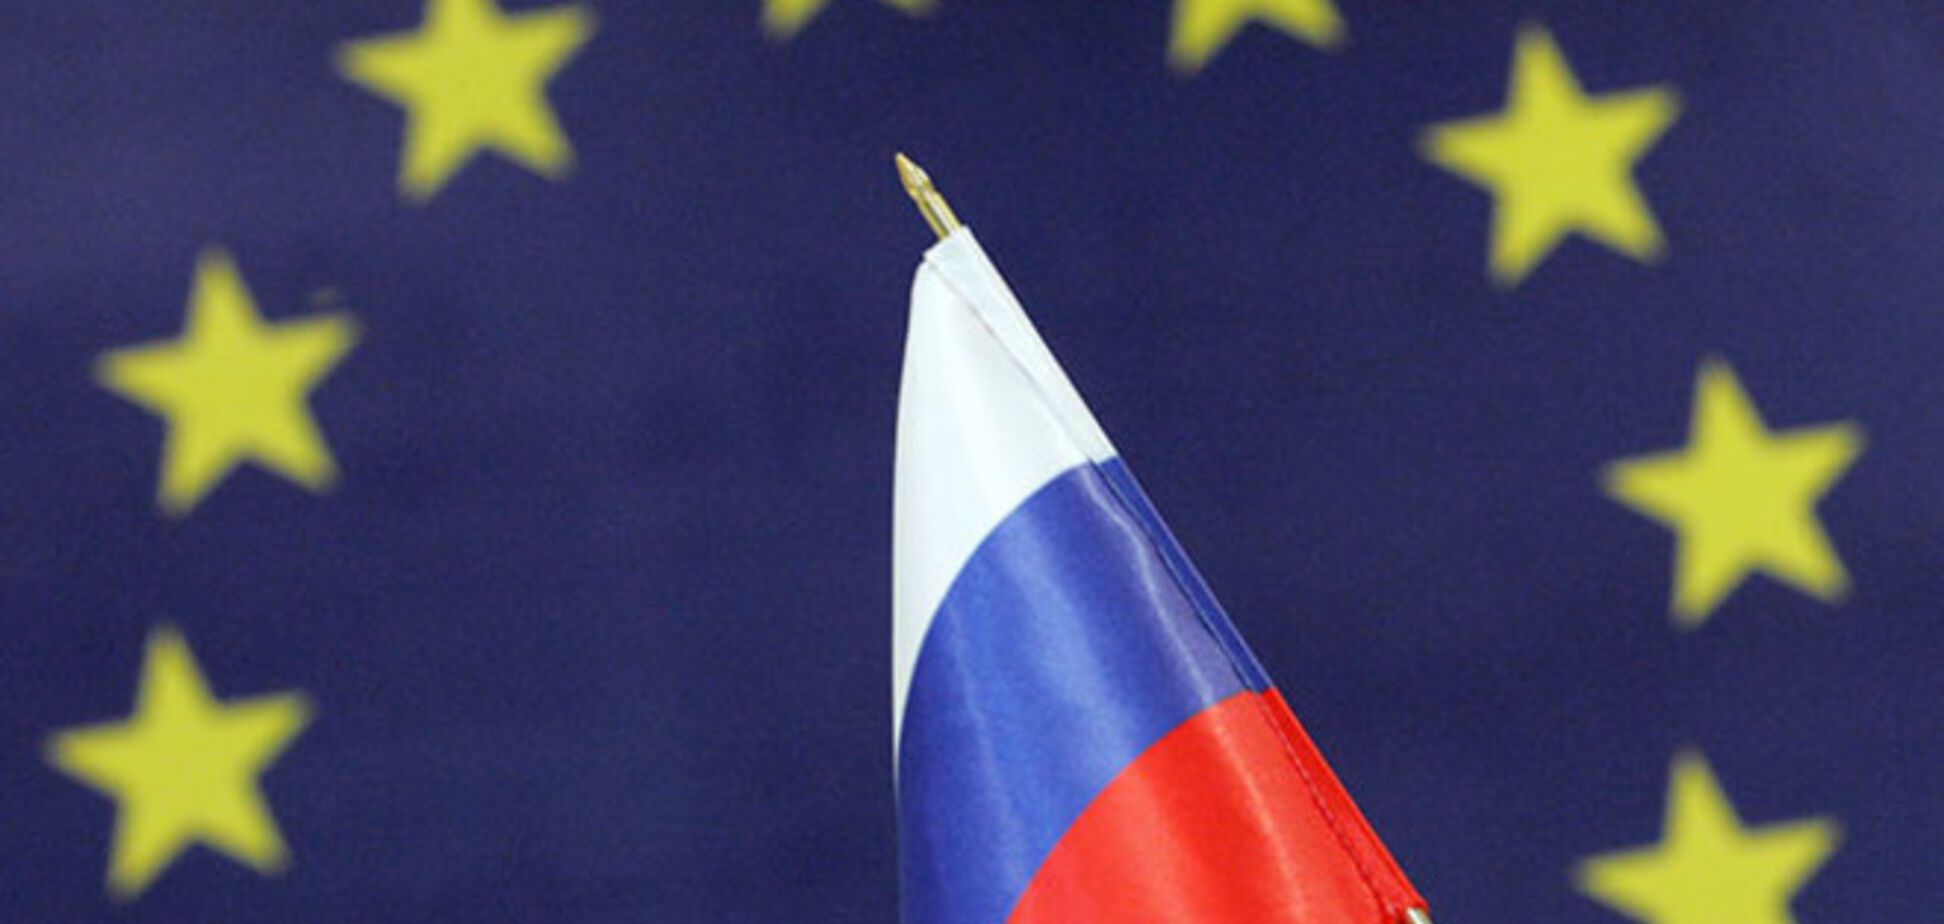 ЕС вводит санкции против замминистра обороны России и двух депутатов Госдумы - источник